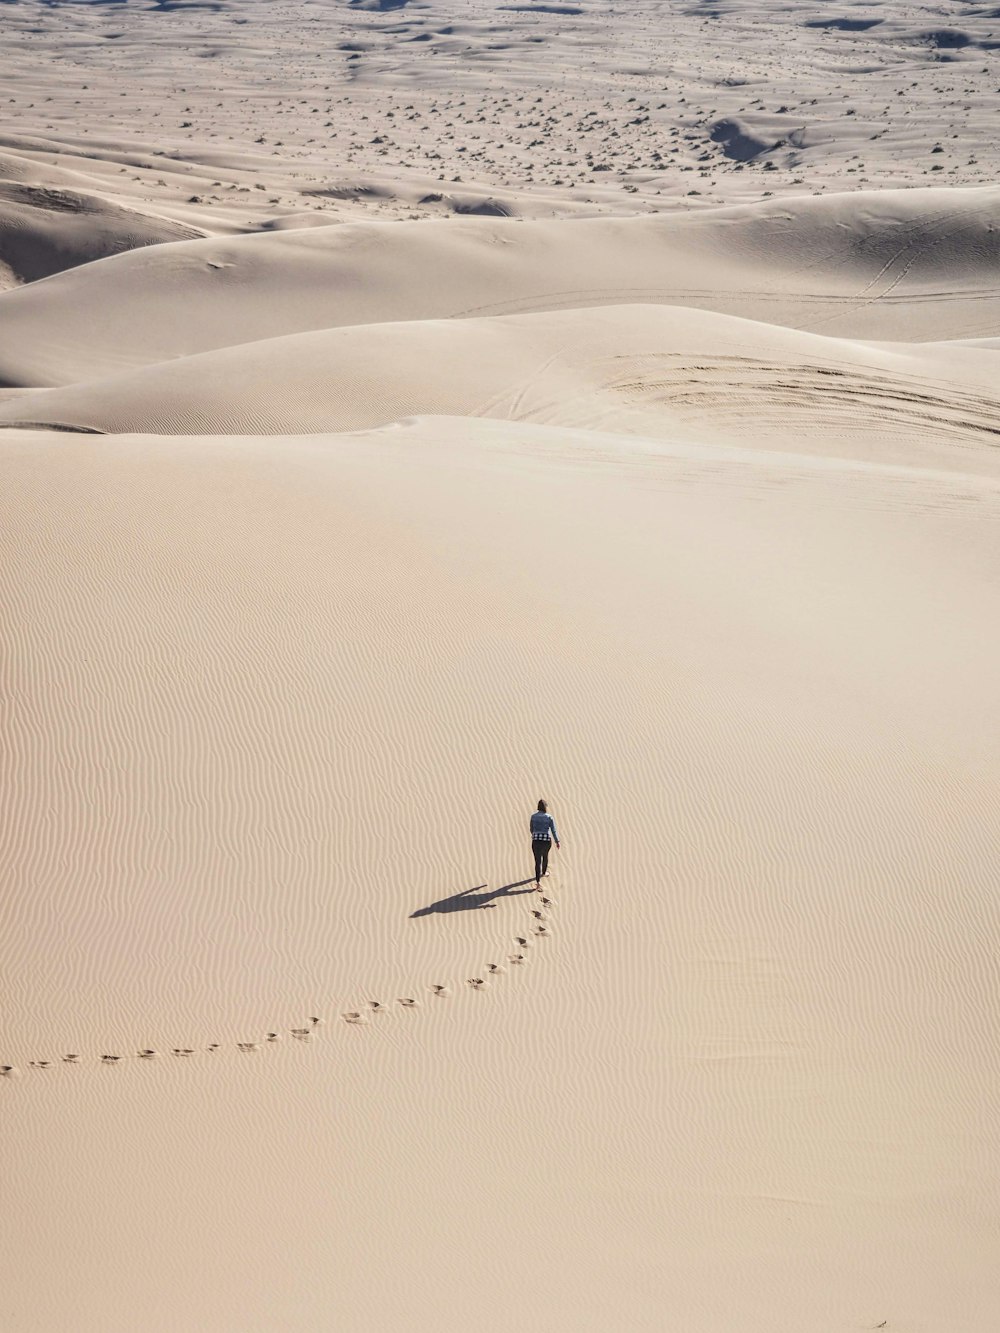 昼間、砂漠の砂の上を歩く人